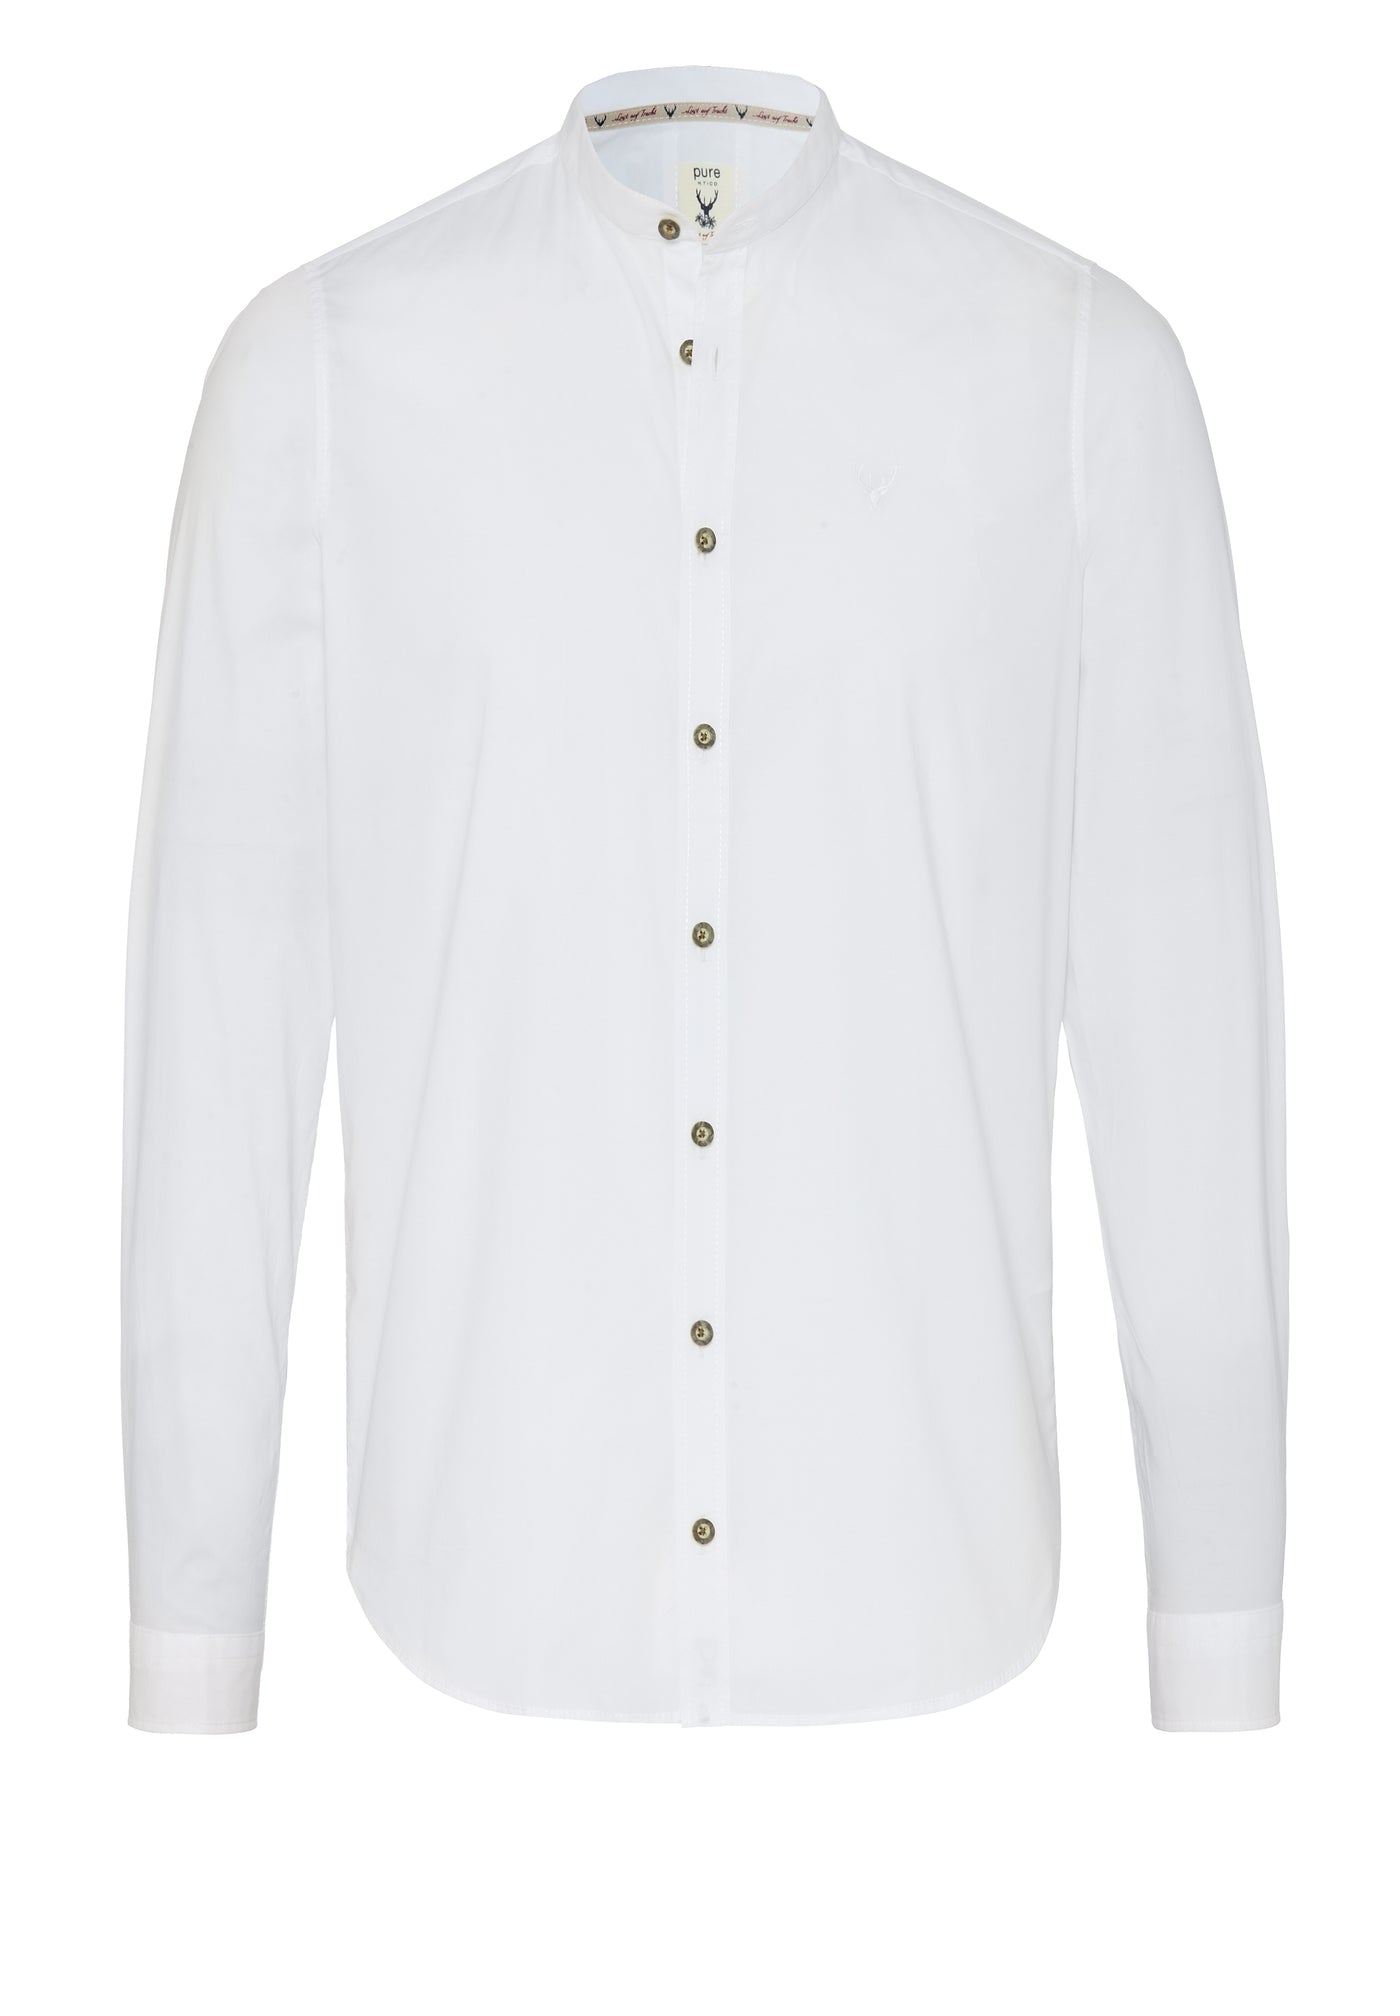 5011-21690 - Tracht Hemd slim fit - weiß